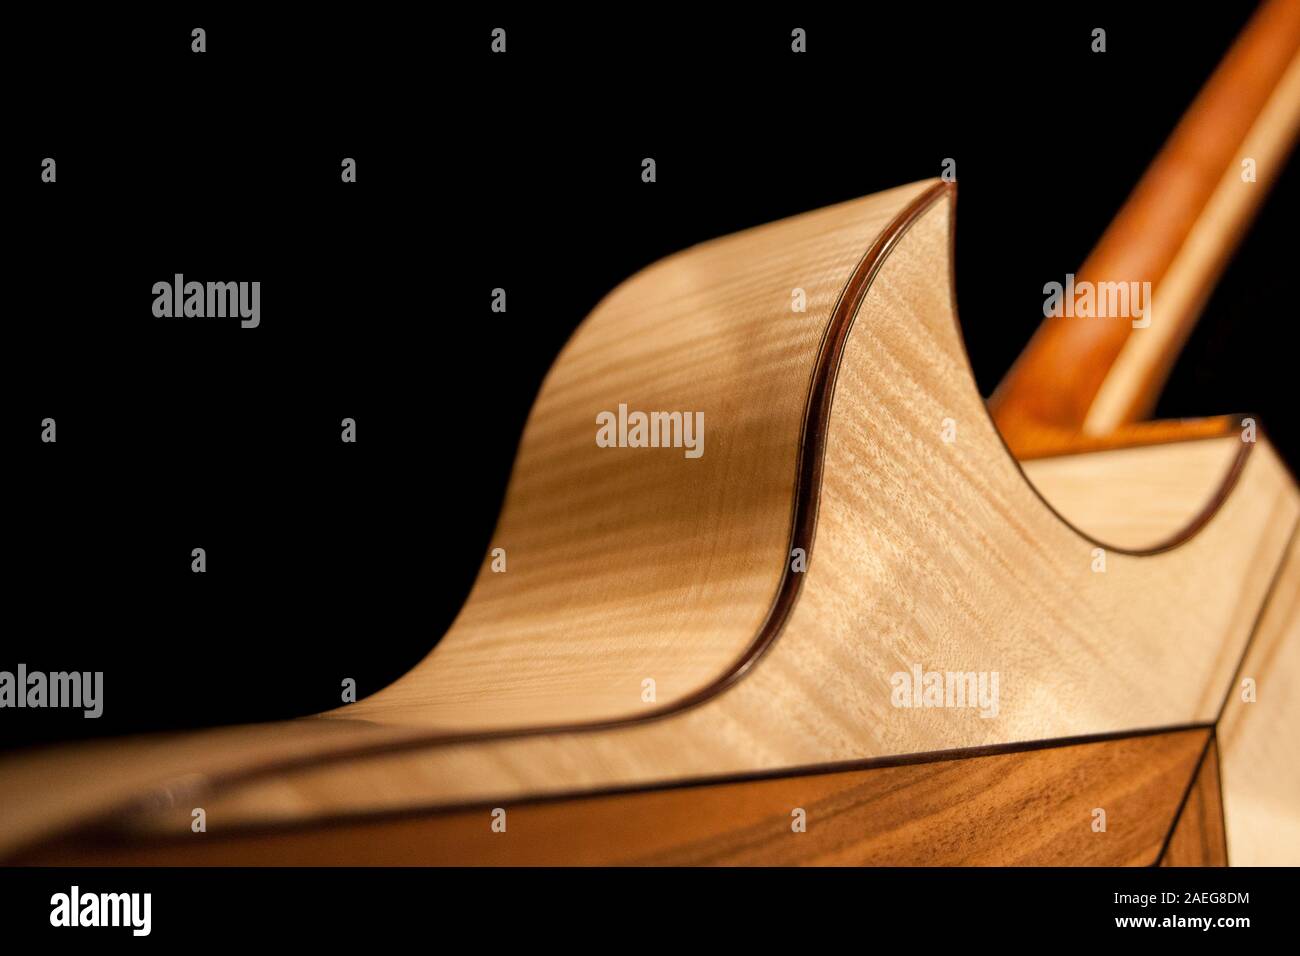 Un dettaglio della parte posteriore di un fatto a mano la chitarra su uno sfondo nero Foto Stock